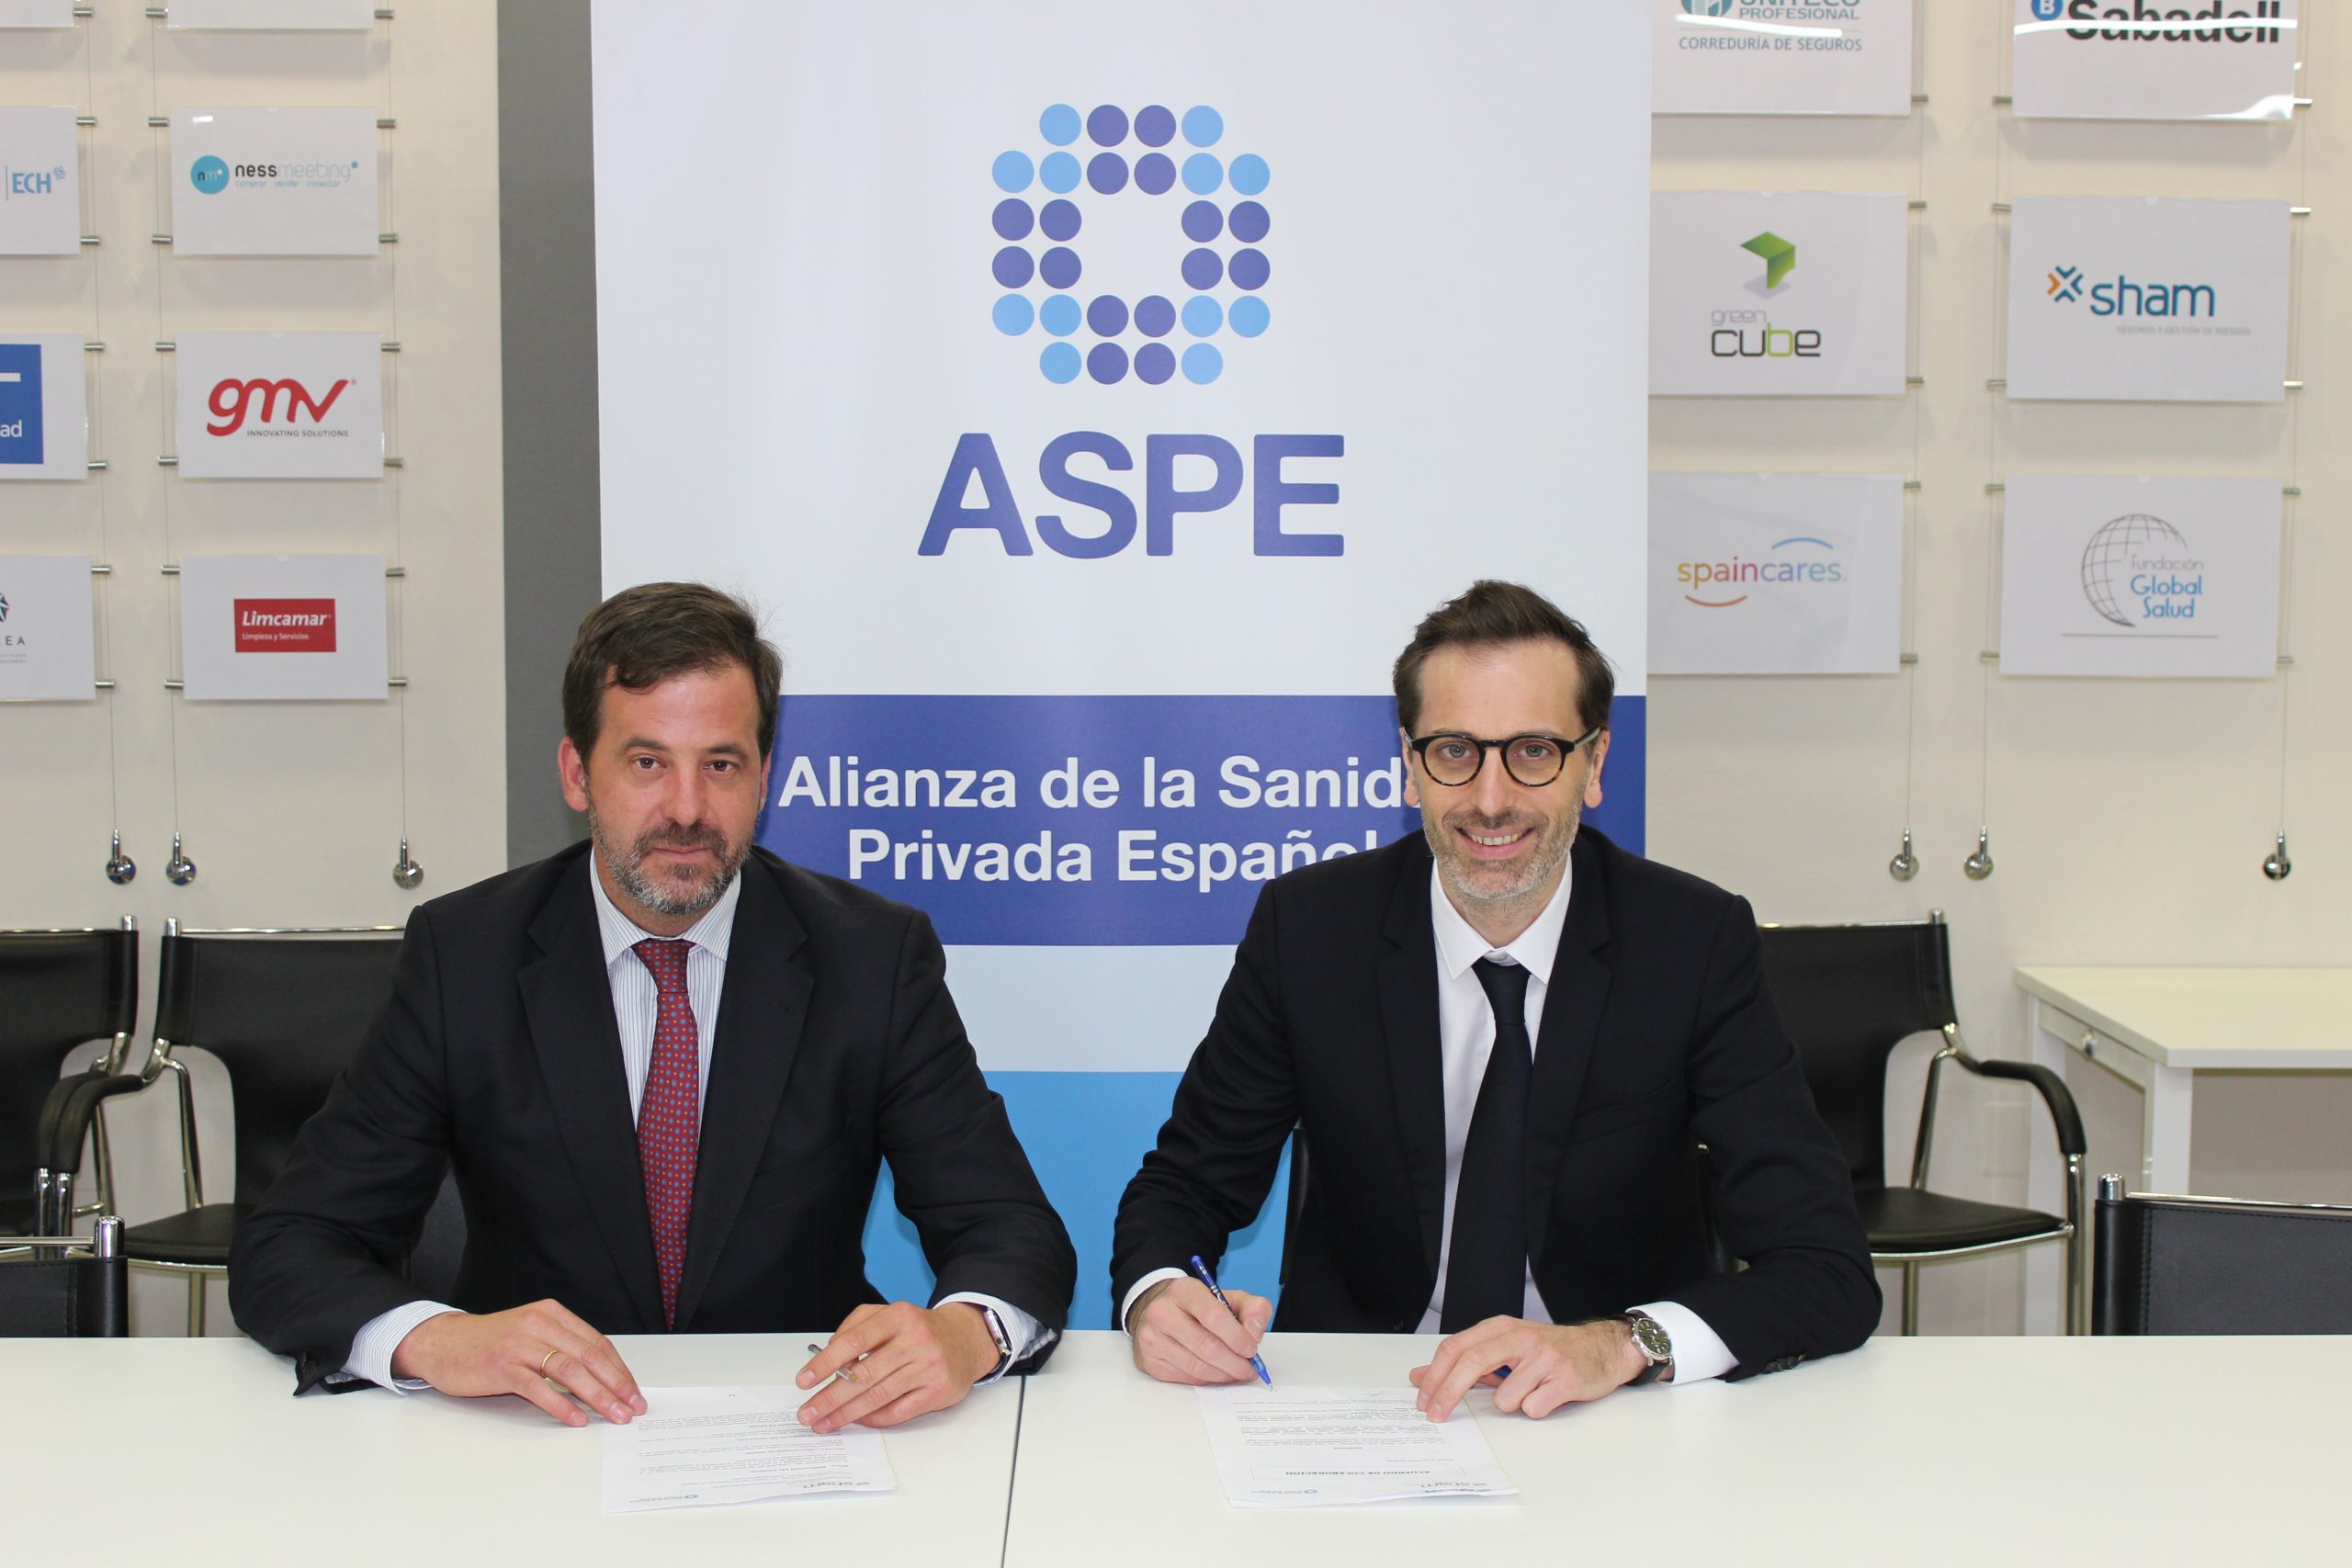 ASPE firma un acuerdo de colaboración con Sham, mutua aseguradora especialista en el sector